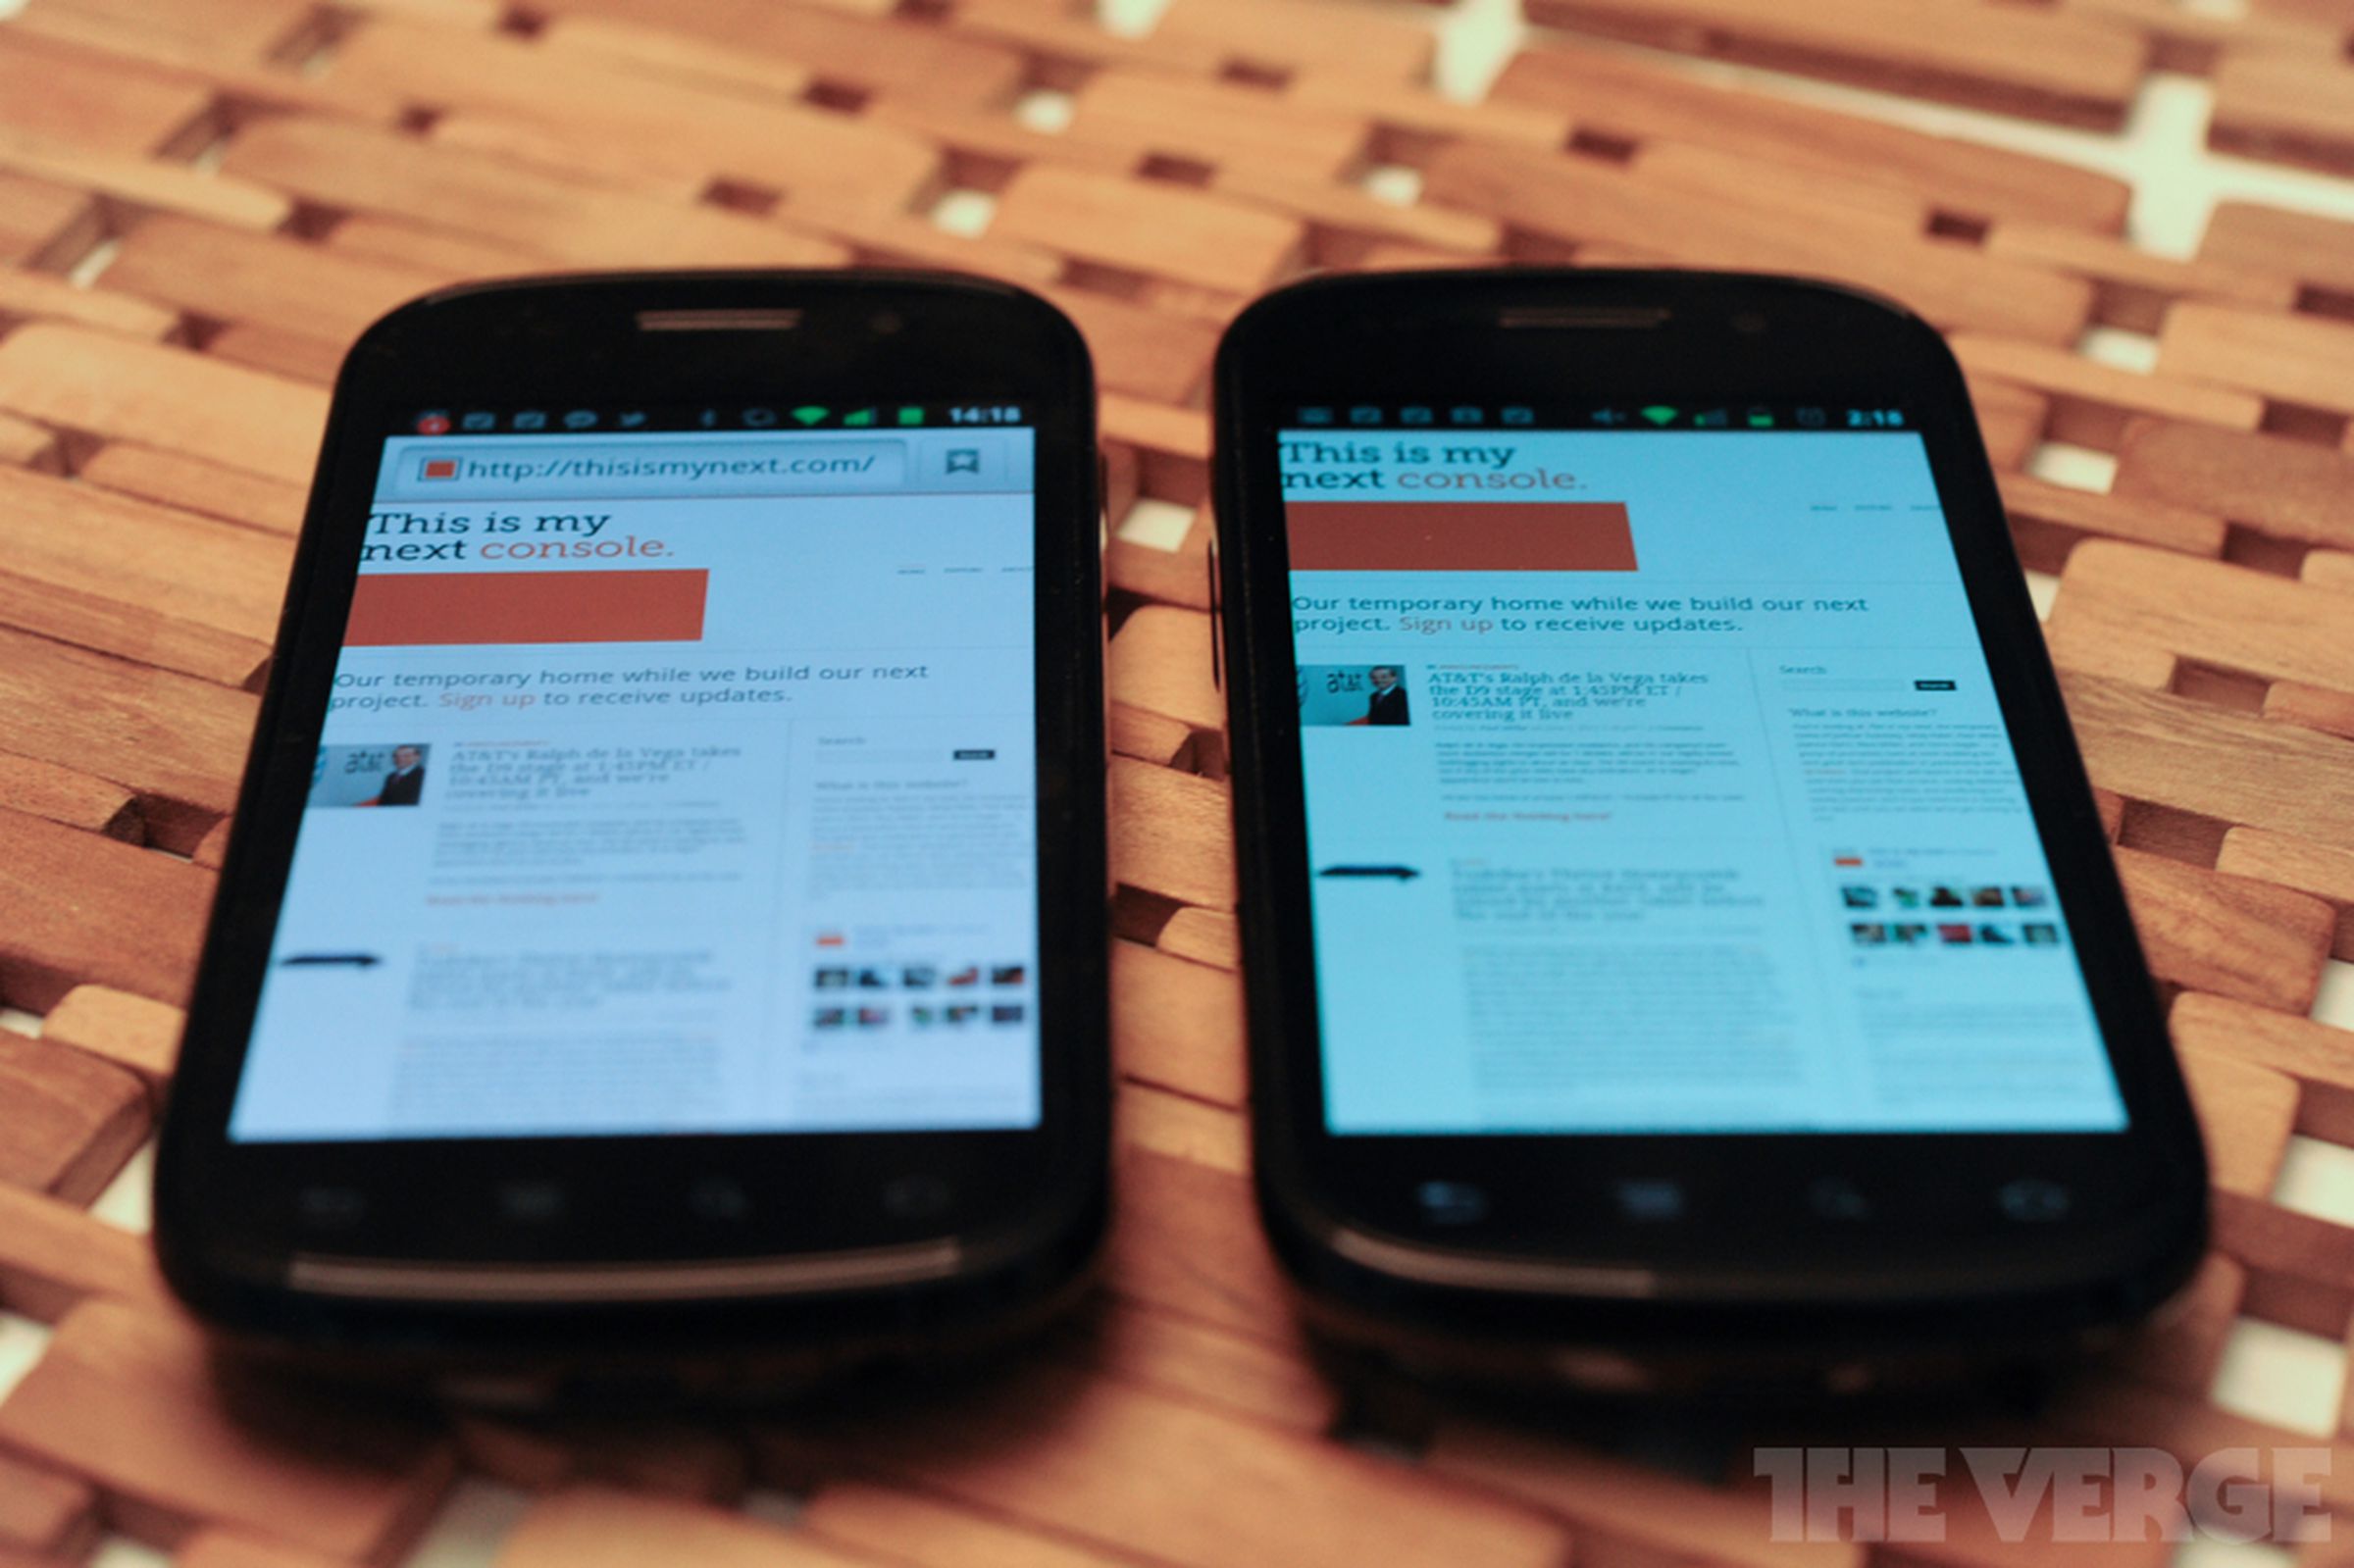 Google Nexus S 4G: a quick look